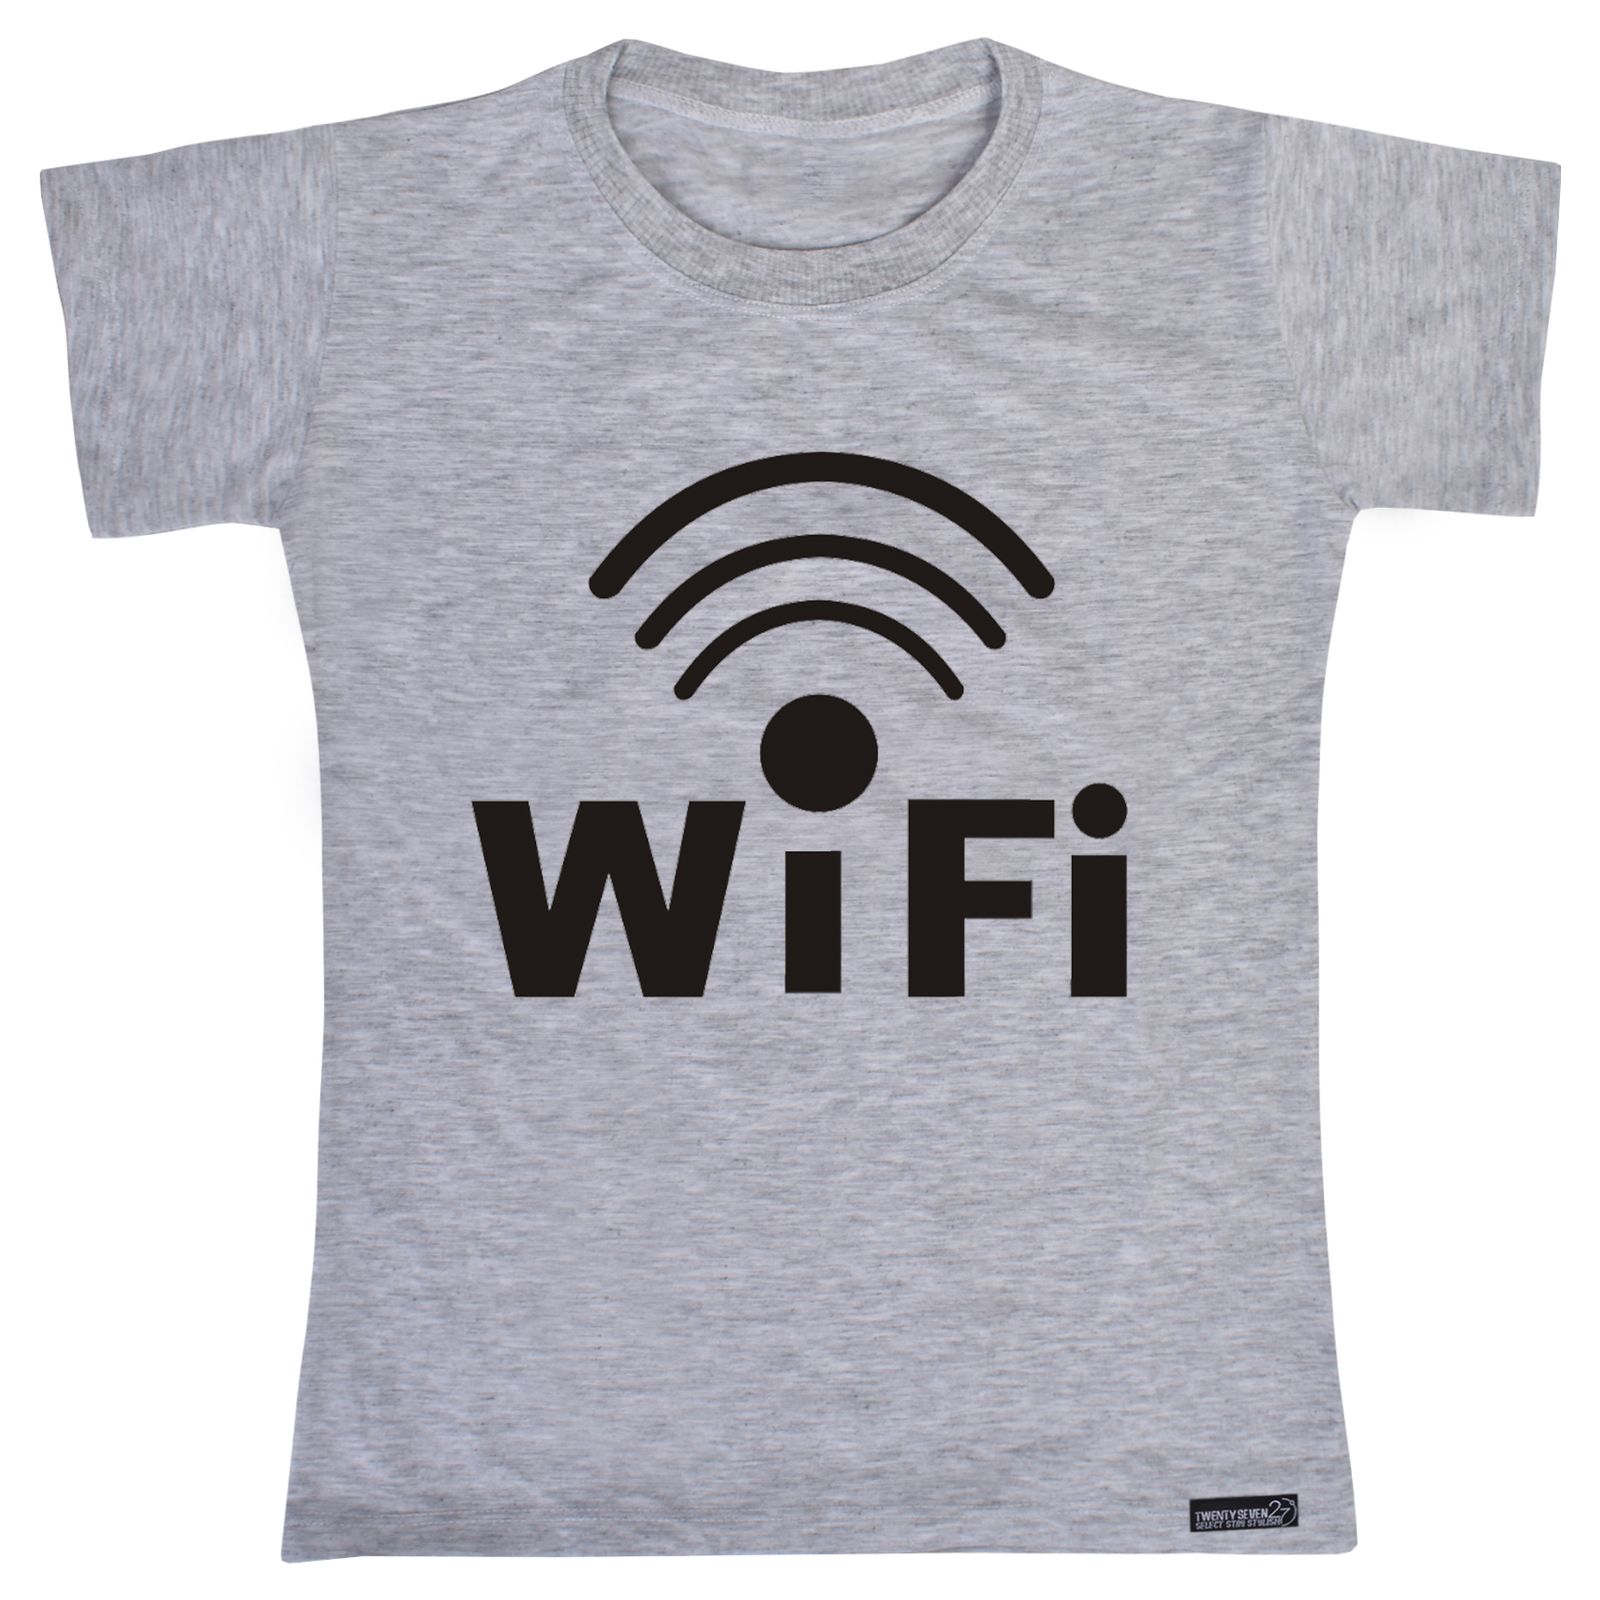 تی شرت آستین کوتاه دخترانه 27 مدل WiFi کد MH868 -  - 3